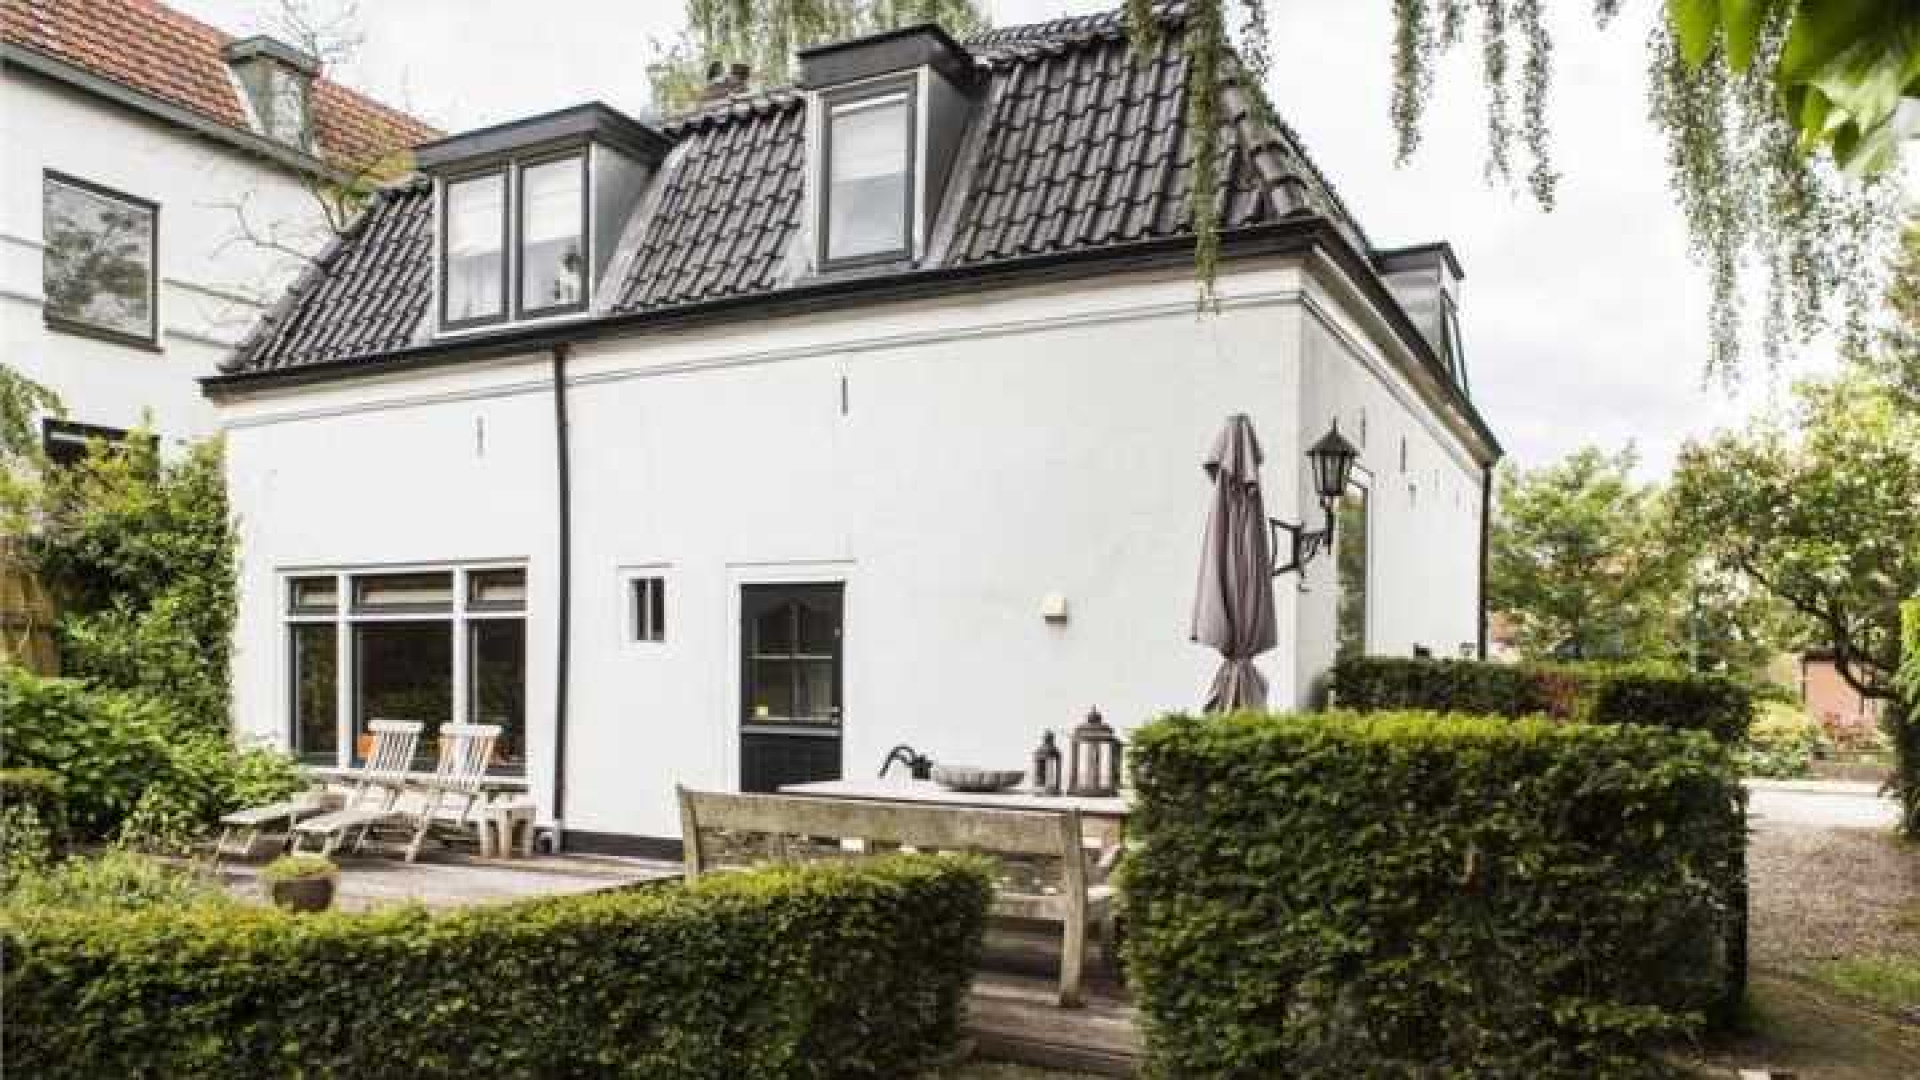 Mariska Hulscher haalt haar villa uit de verkoop. Zie foto's 20